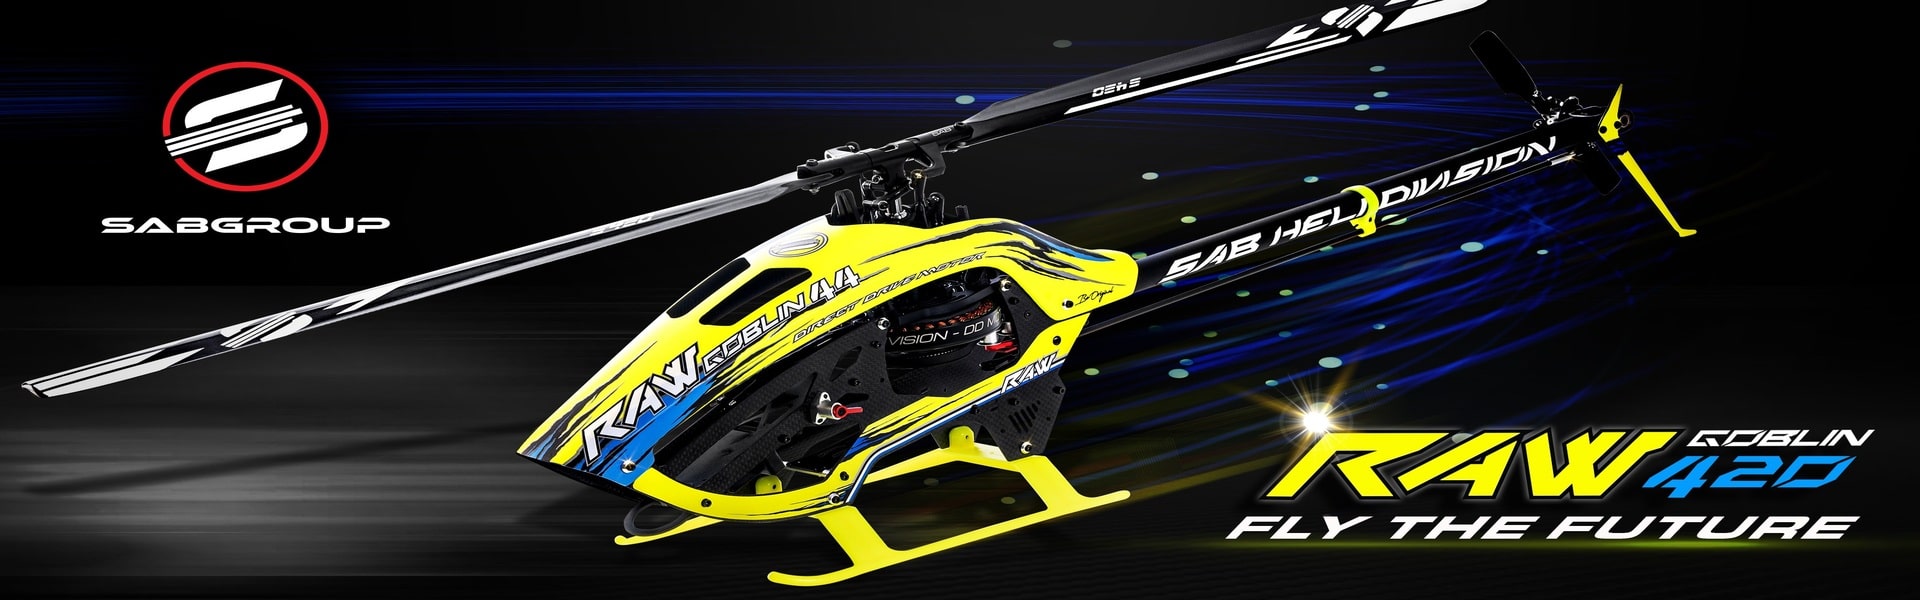 SALE中)SAB GOBLIN 420 スポーツ ヘリコプター - ホビーラジコン